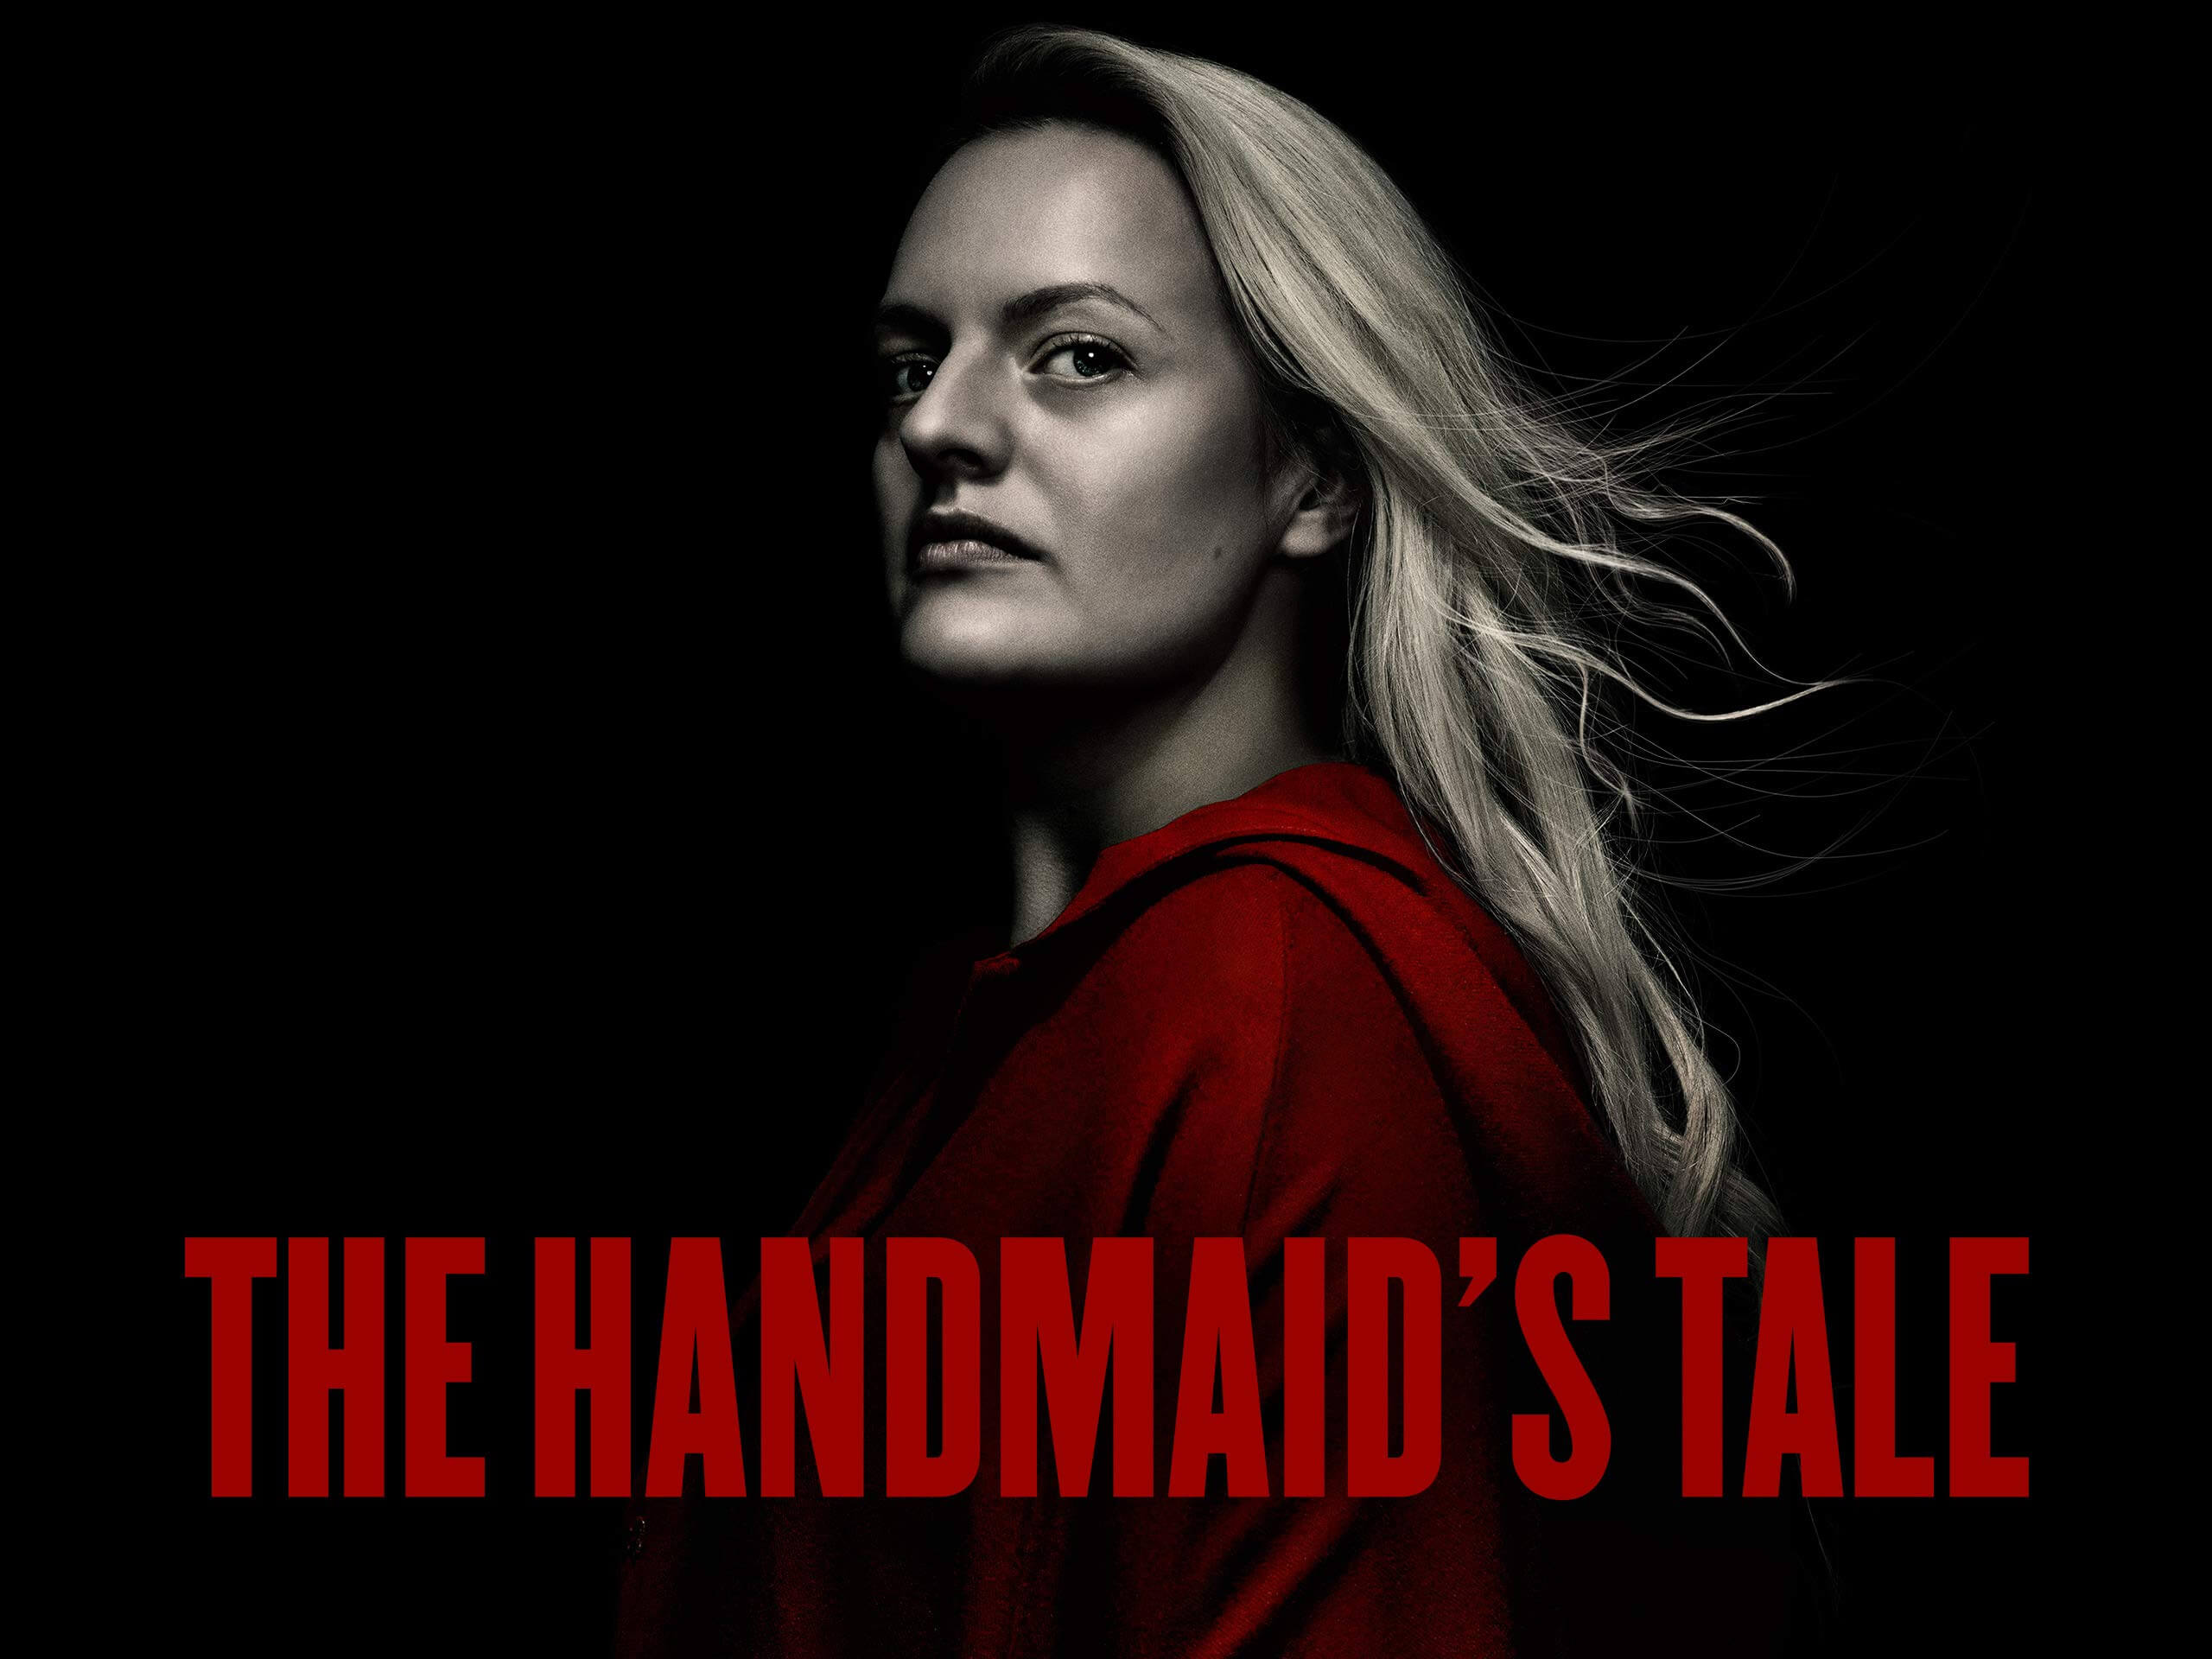 The-Handmaid-s-Tale-skygo-movie